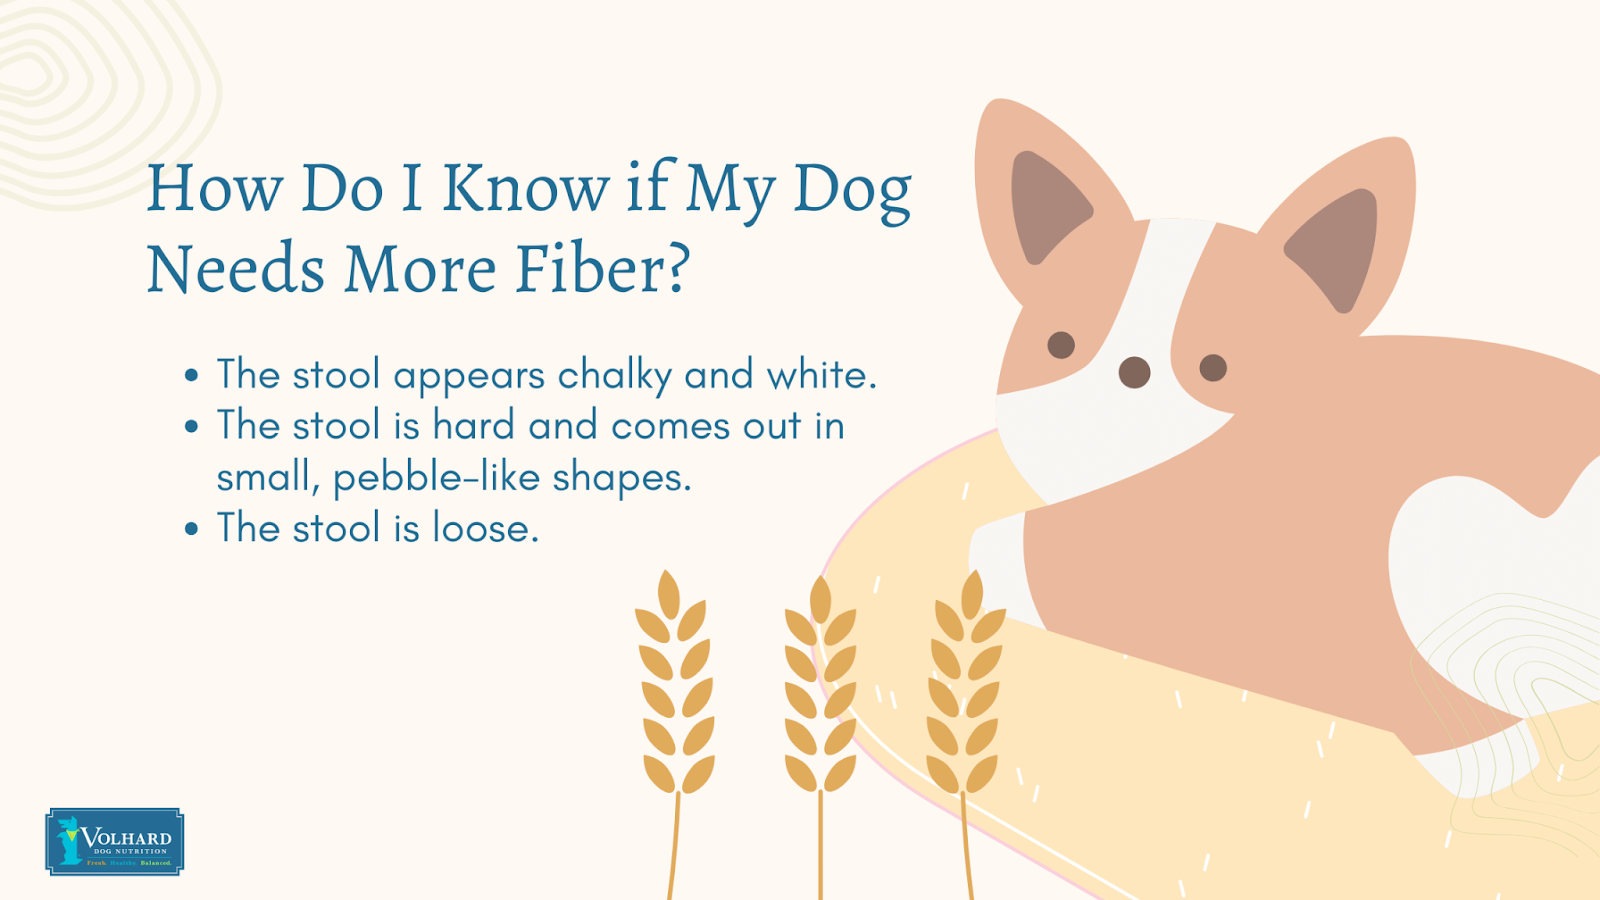 Does my dog need fiber